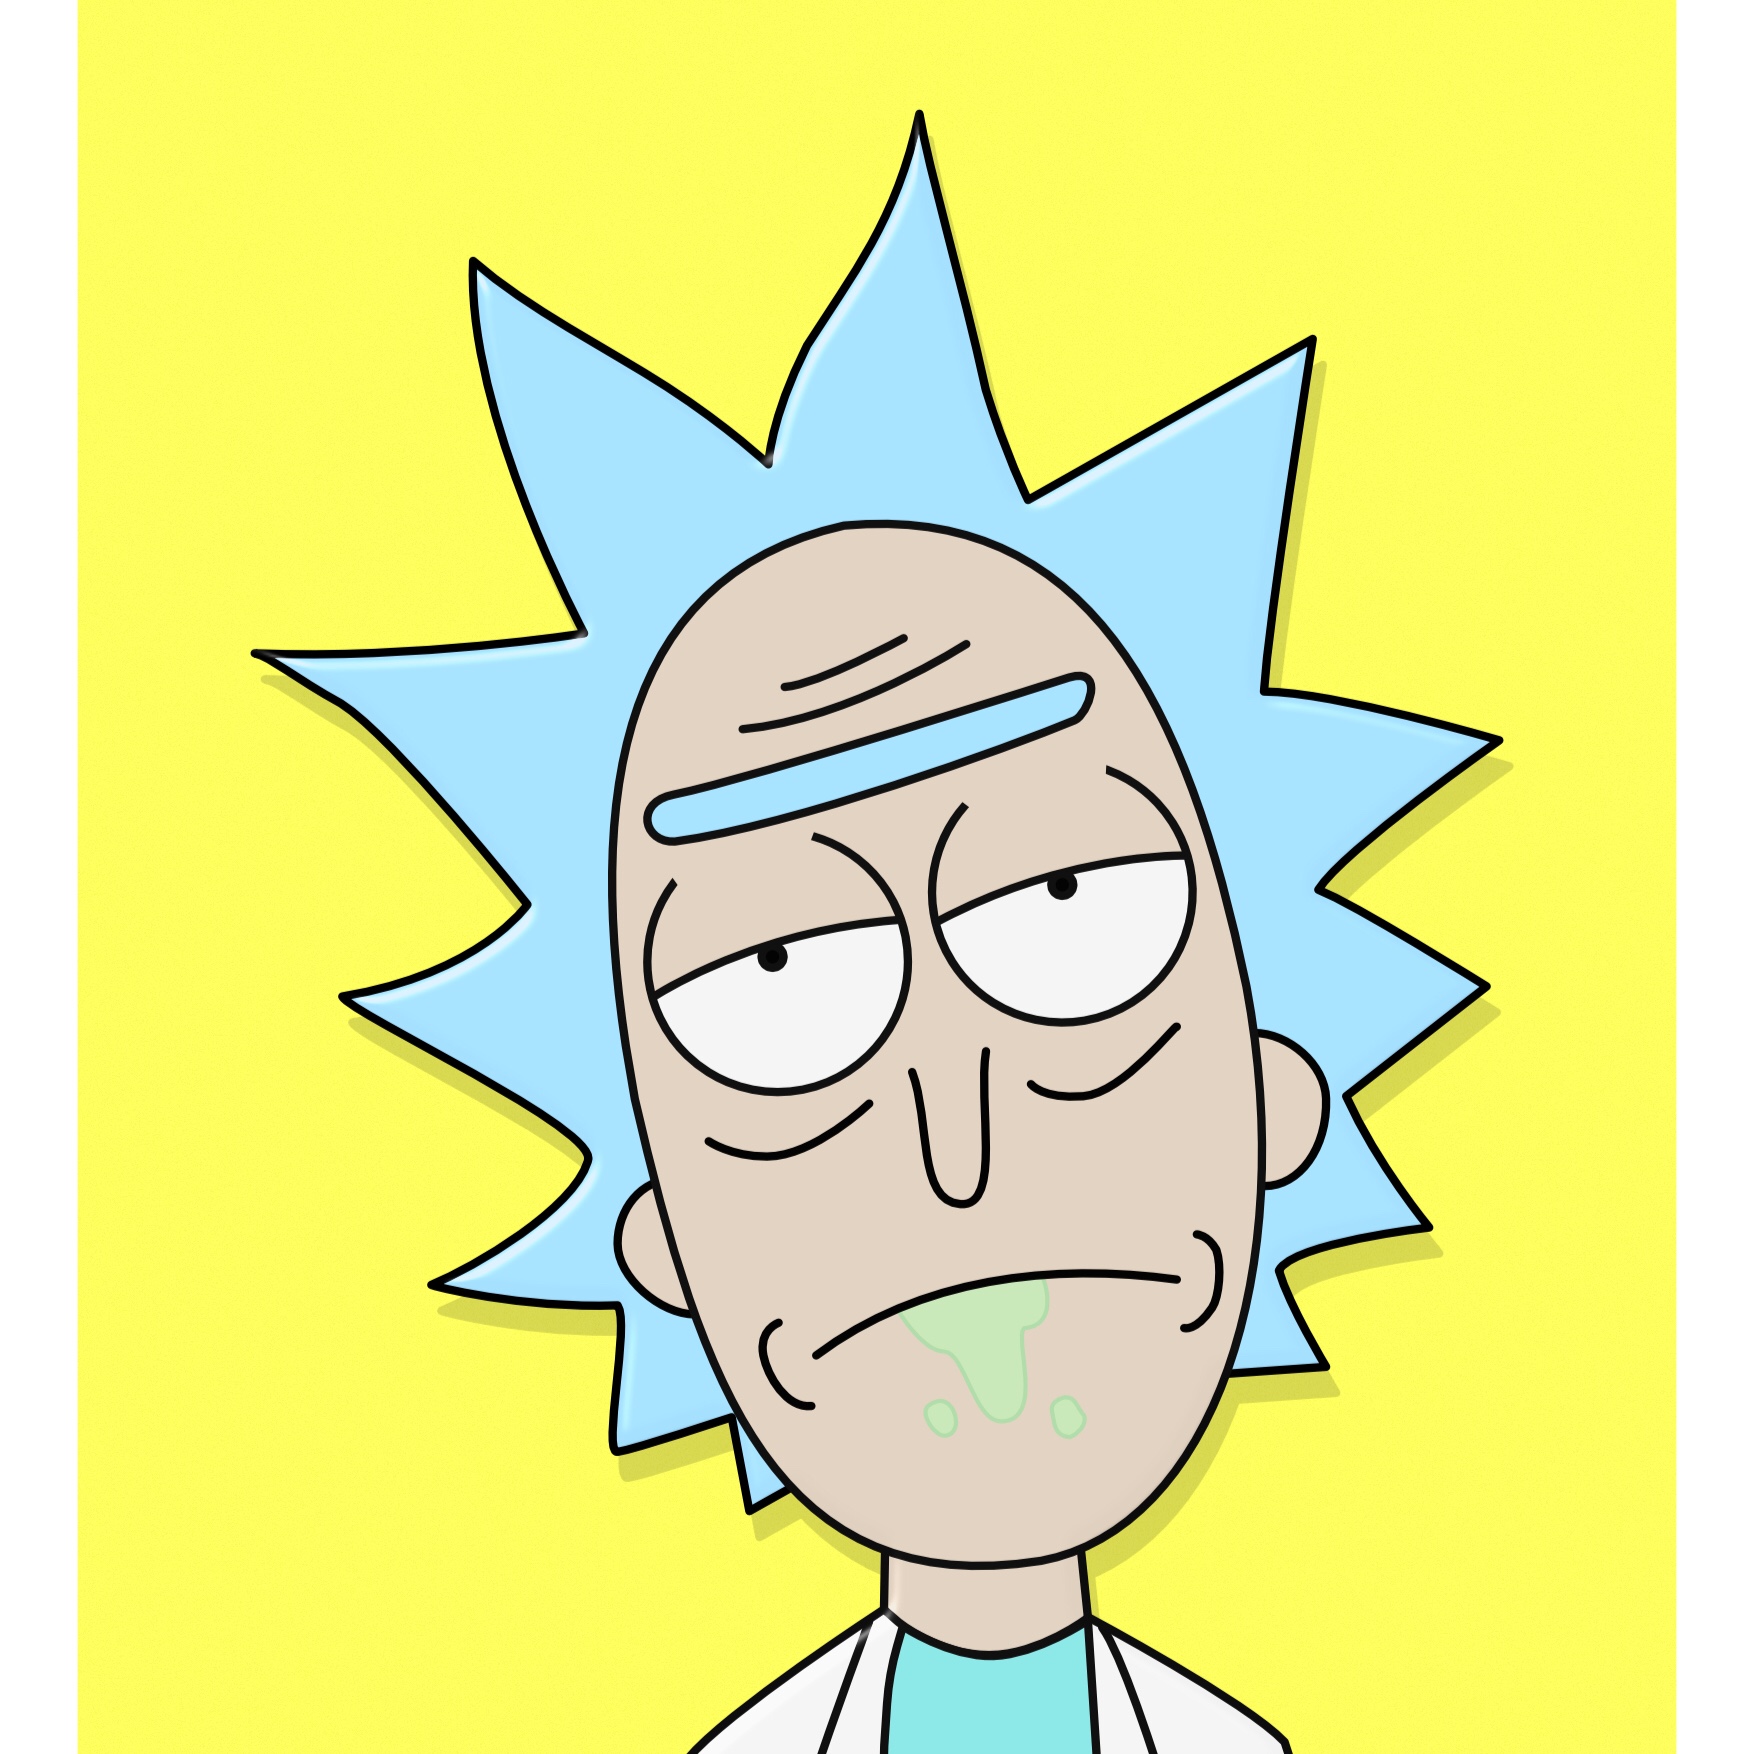 Rick dag